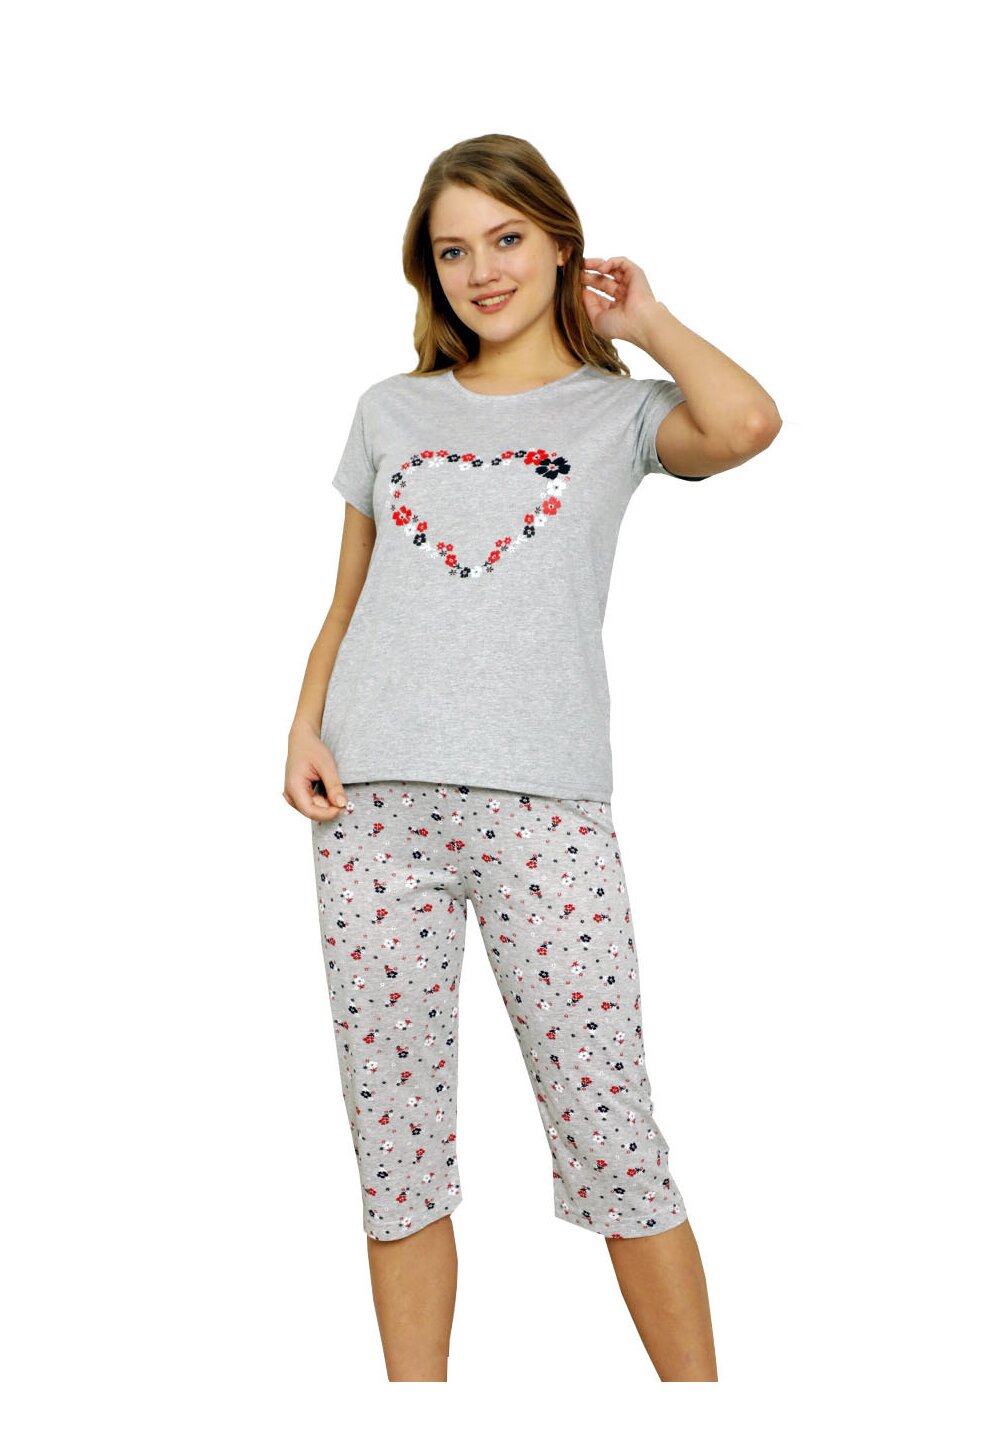 Pijama femei, pantalon 3/4, Love, gri cu floricele 3-4